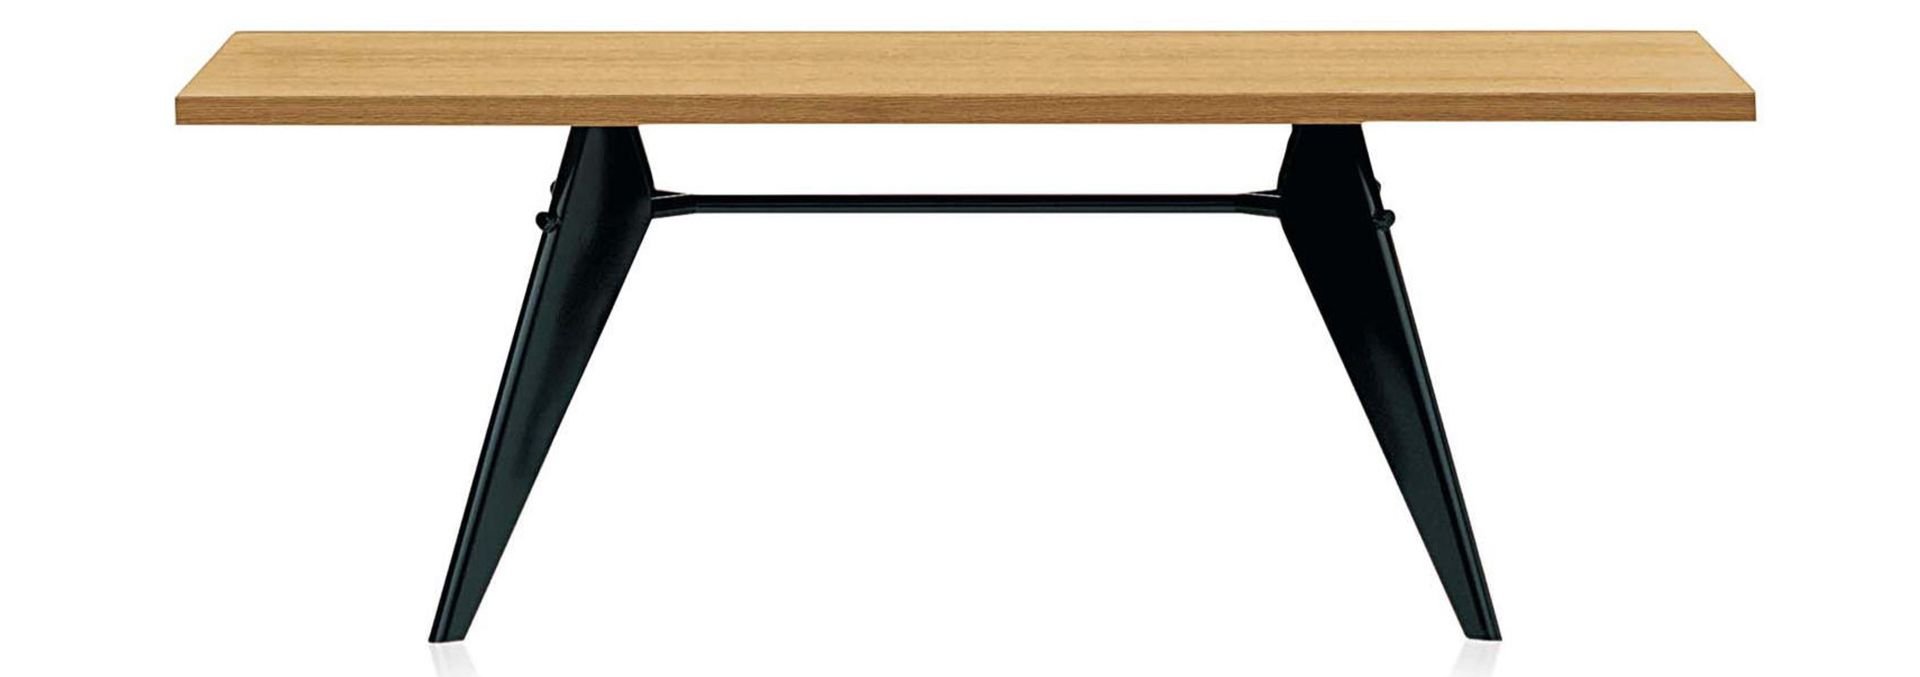 Vitra designové jídelní stoly EM Table (180 x 74 x 90 cm) - DESIGNPROPAGANDA